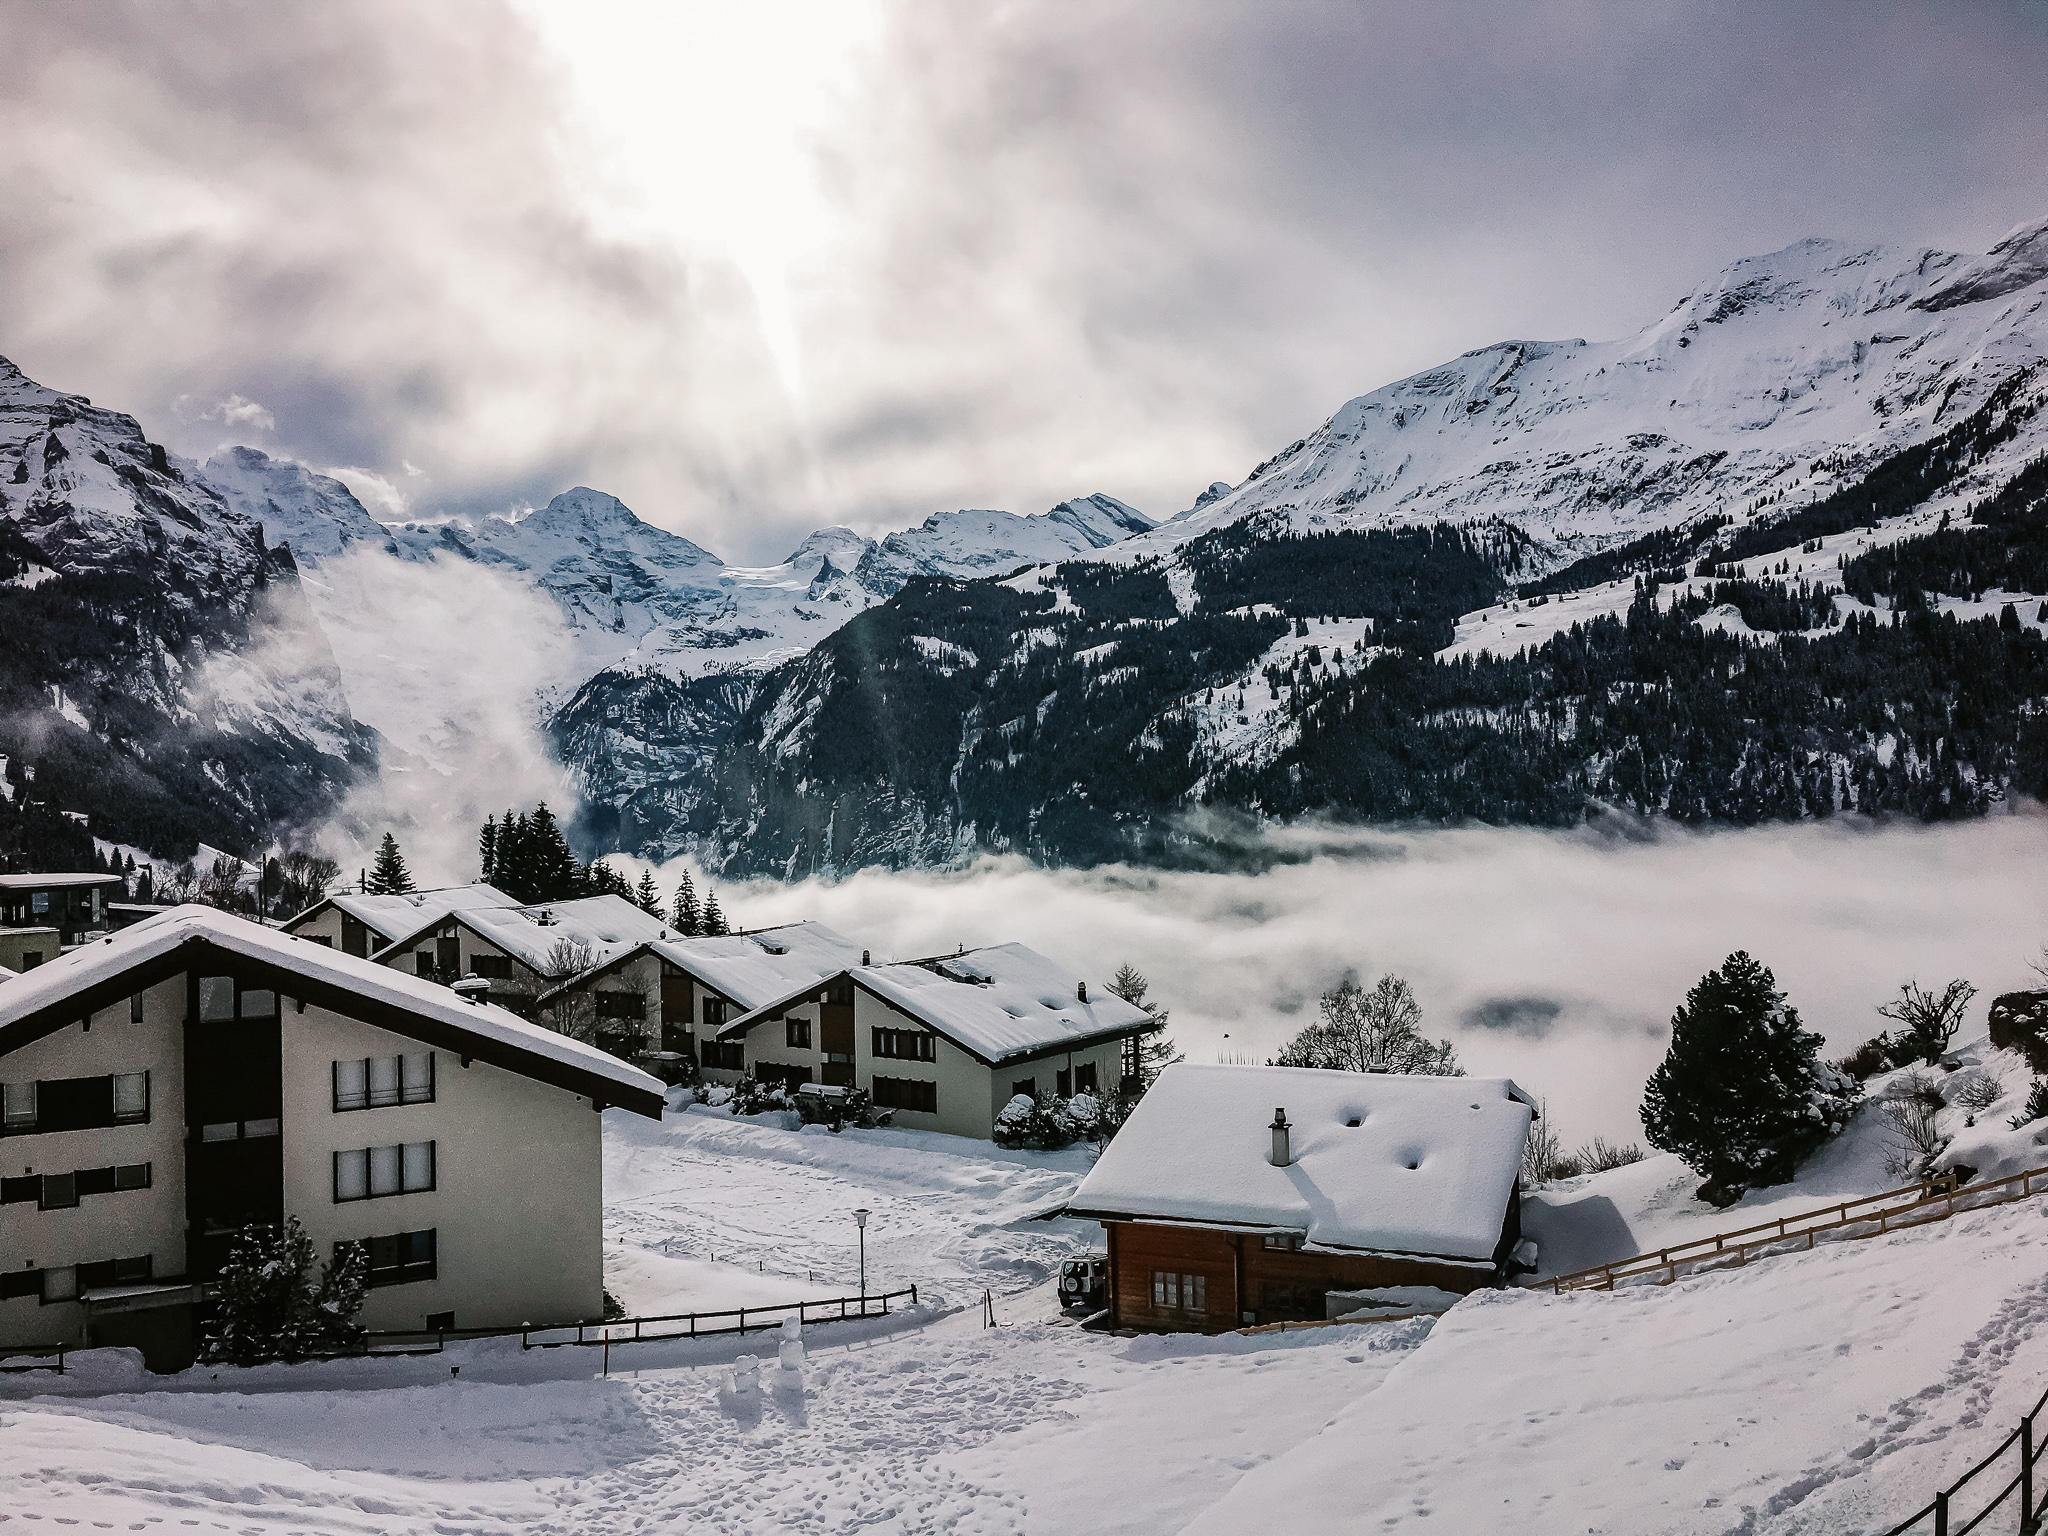 The traditional Swiss alpine village, Murren,near Lauterbrunnen in winter.